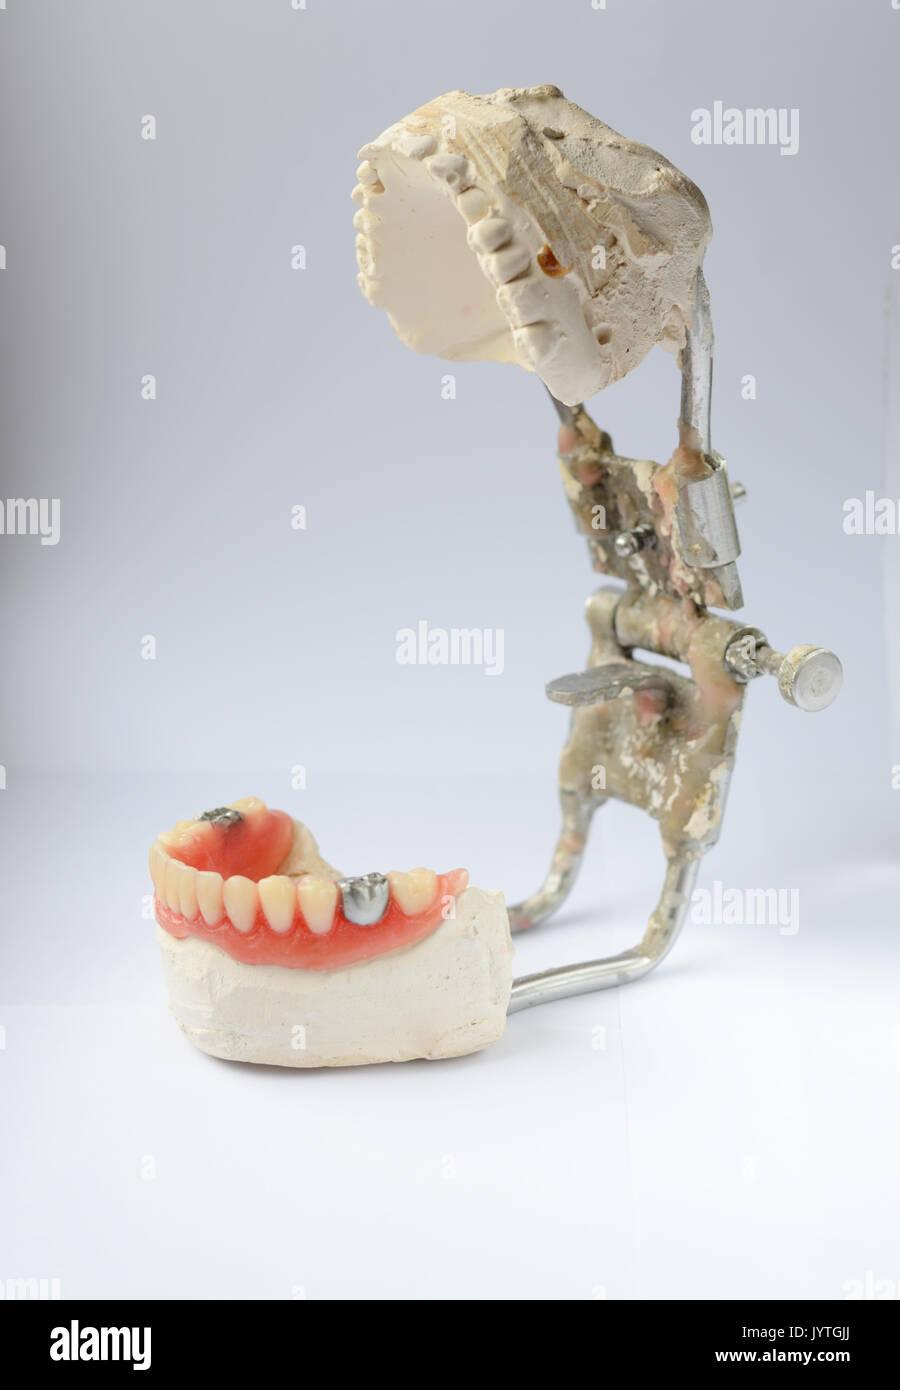 Künstliche Zähne, Zahnersatz mit falschen Zahn, metallic silber Krone an  Zahn. Zahnersatz Stockfotografie - Alamy